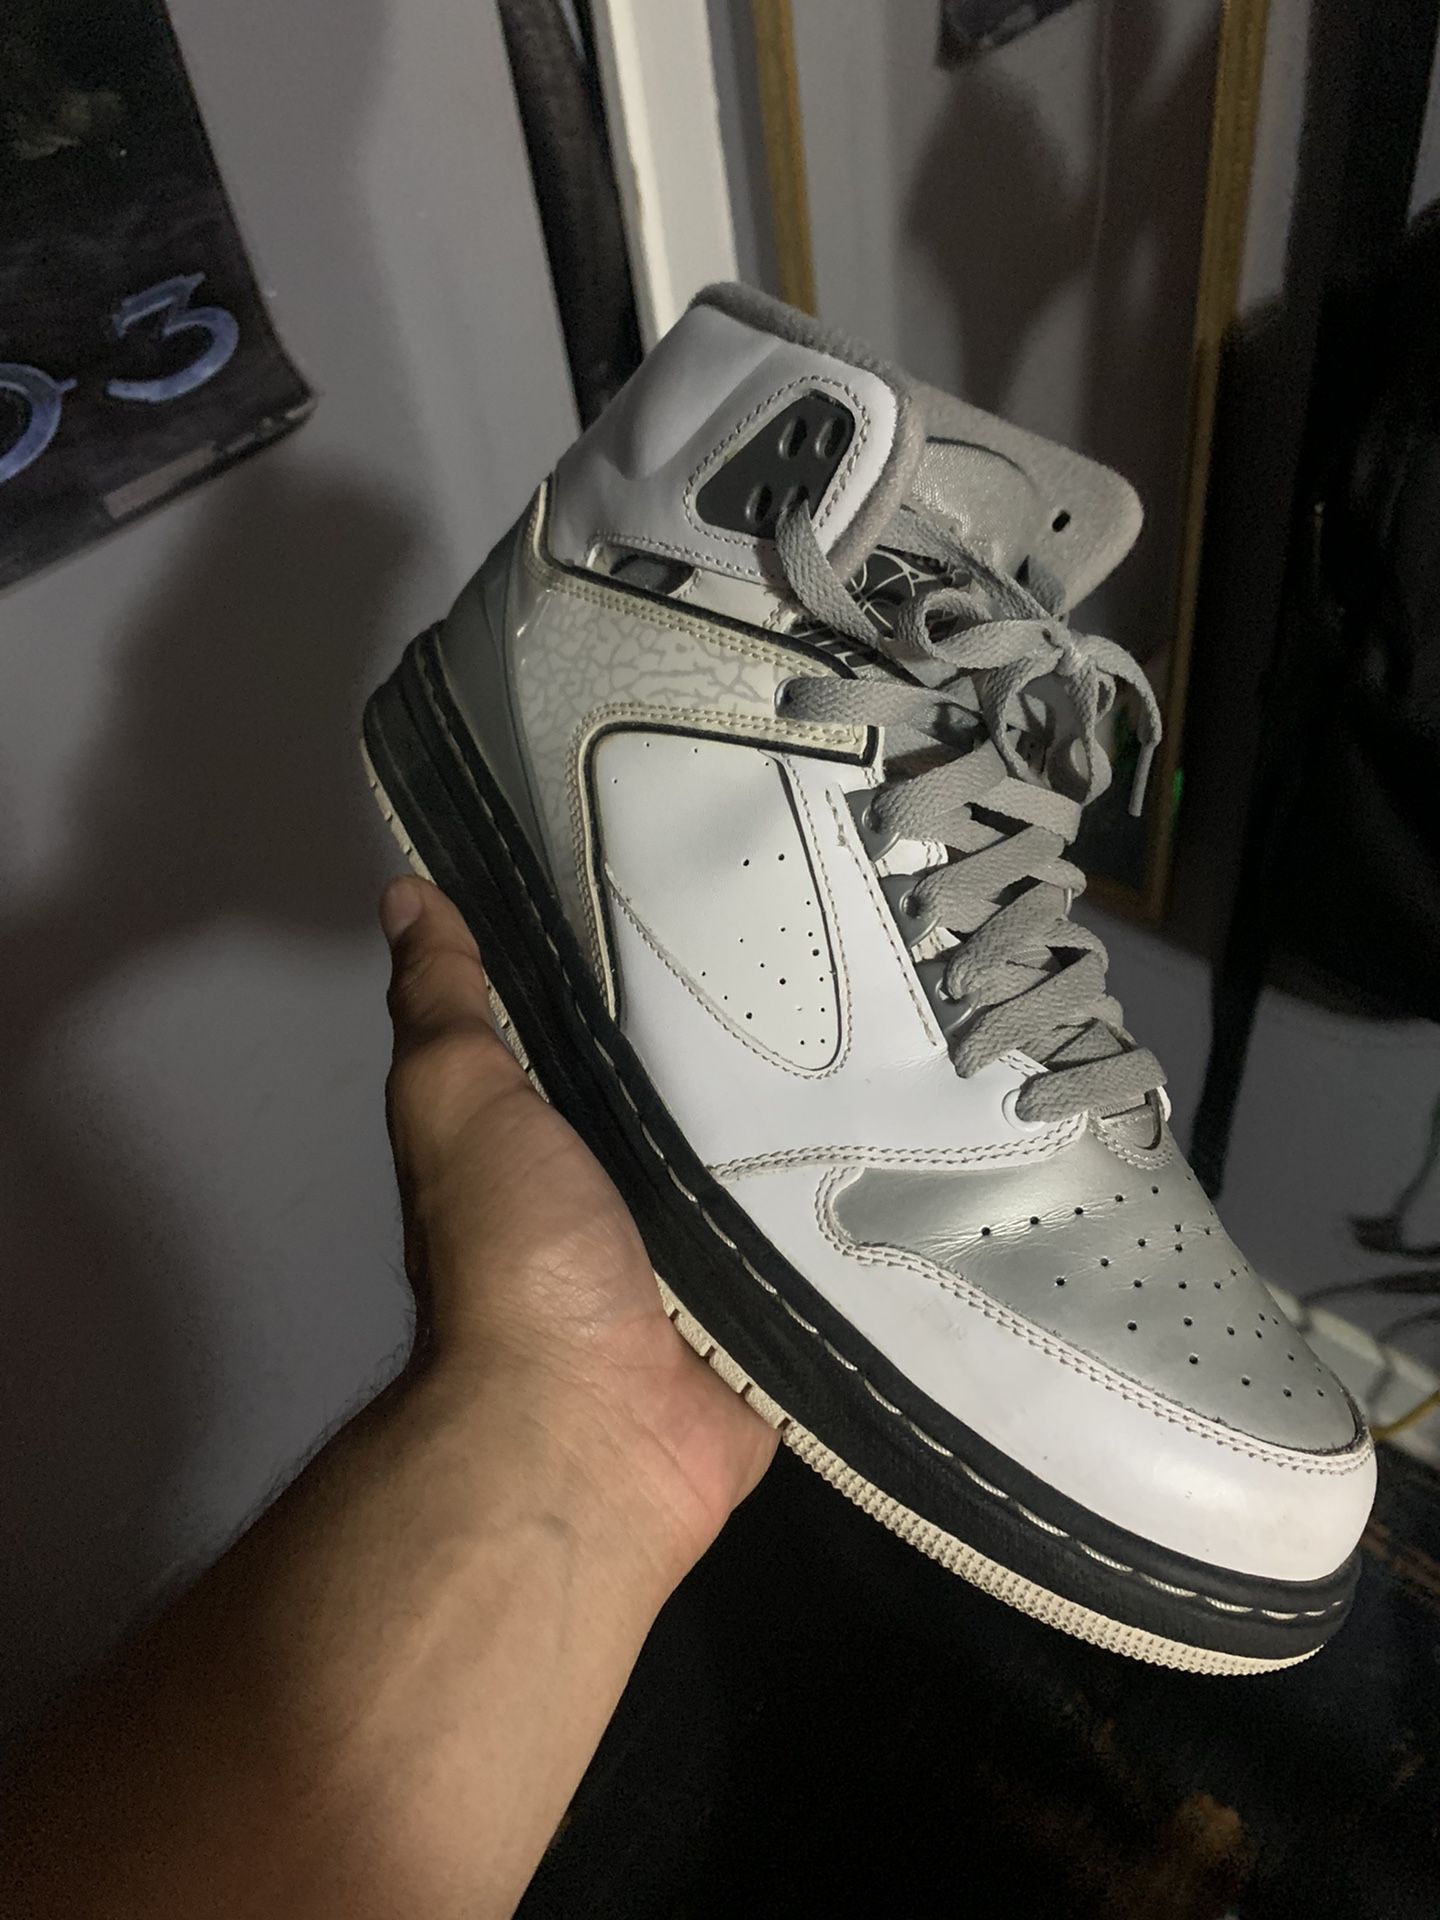 Nike Air Jordan. Retro 2s. 8+ Years Old 